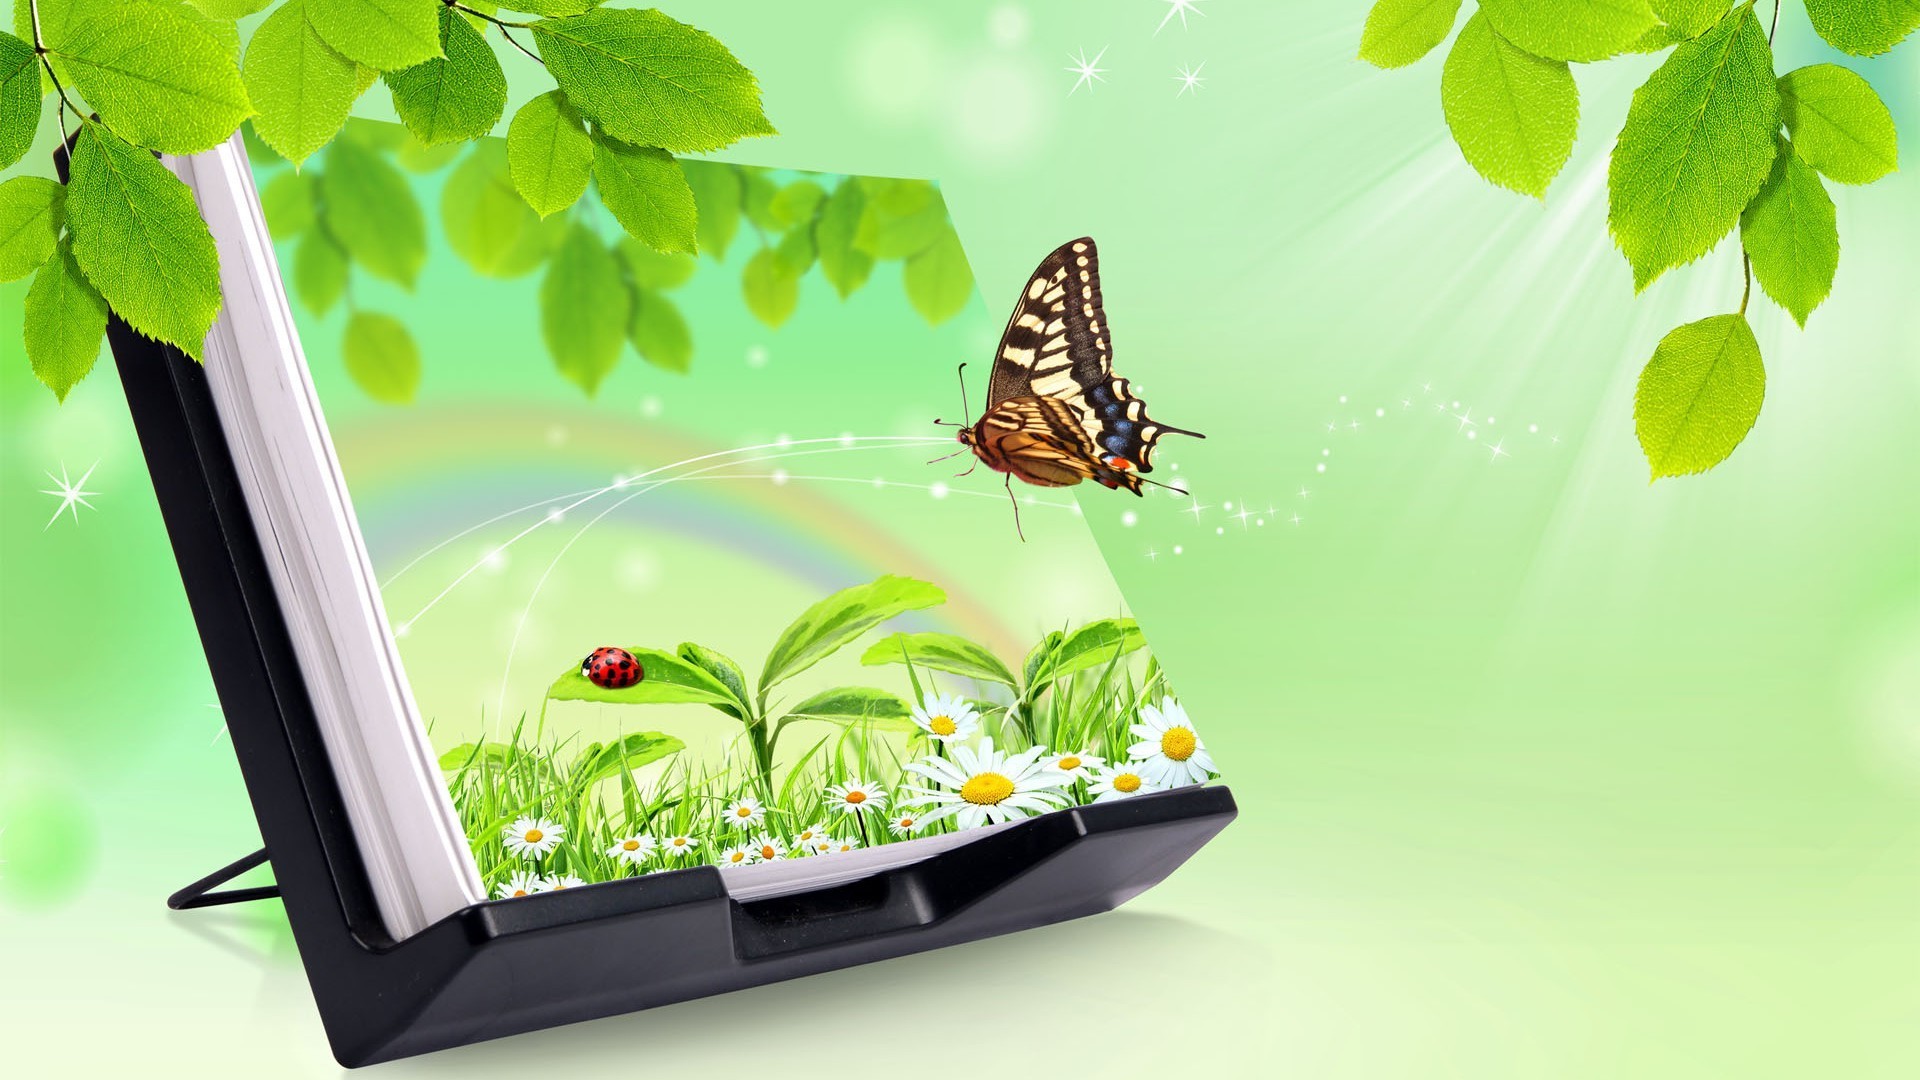 бабочка природа лист лето флора сад рабочего стола насекомое дерево